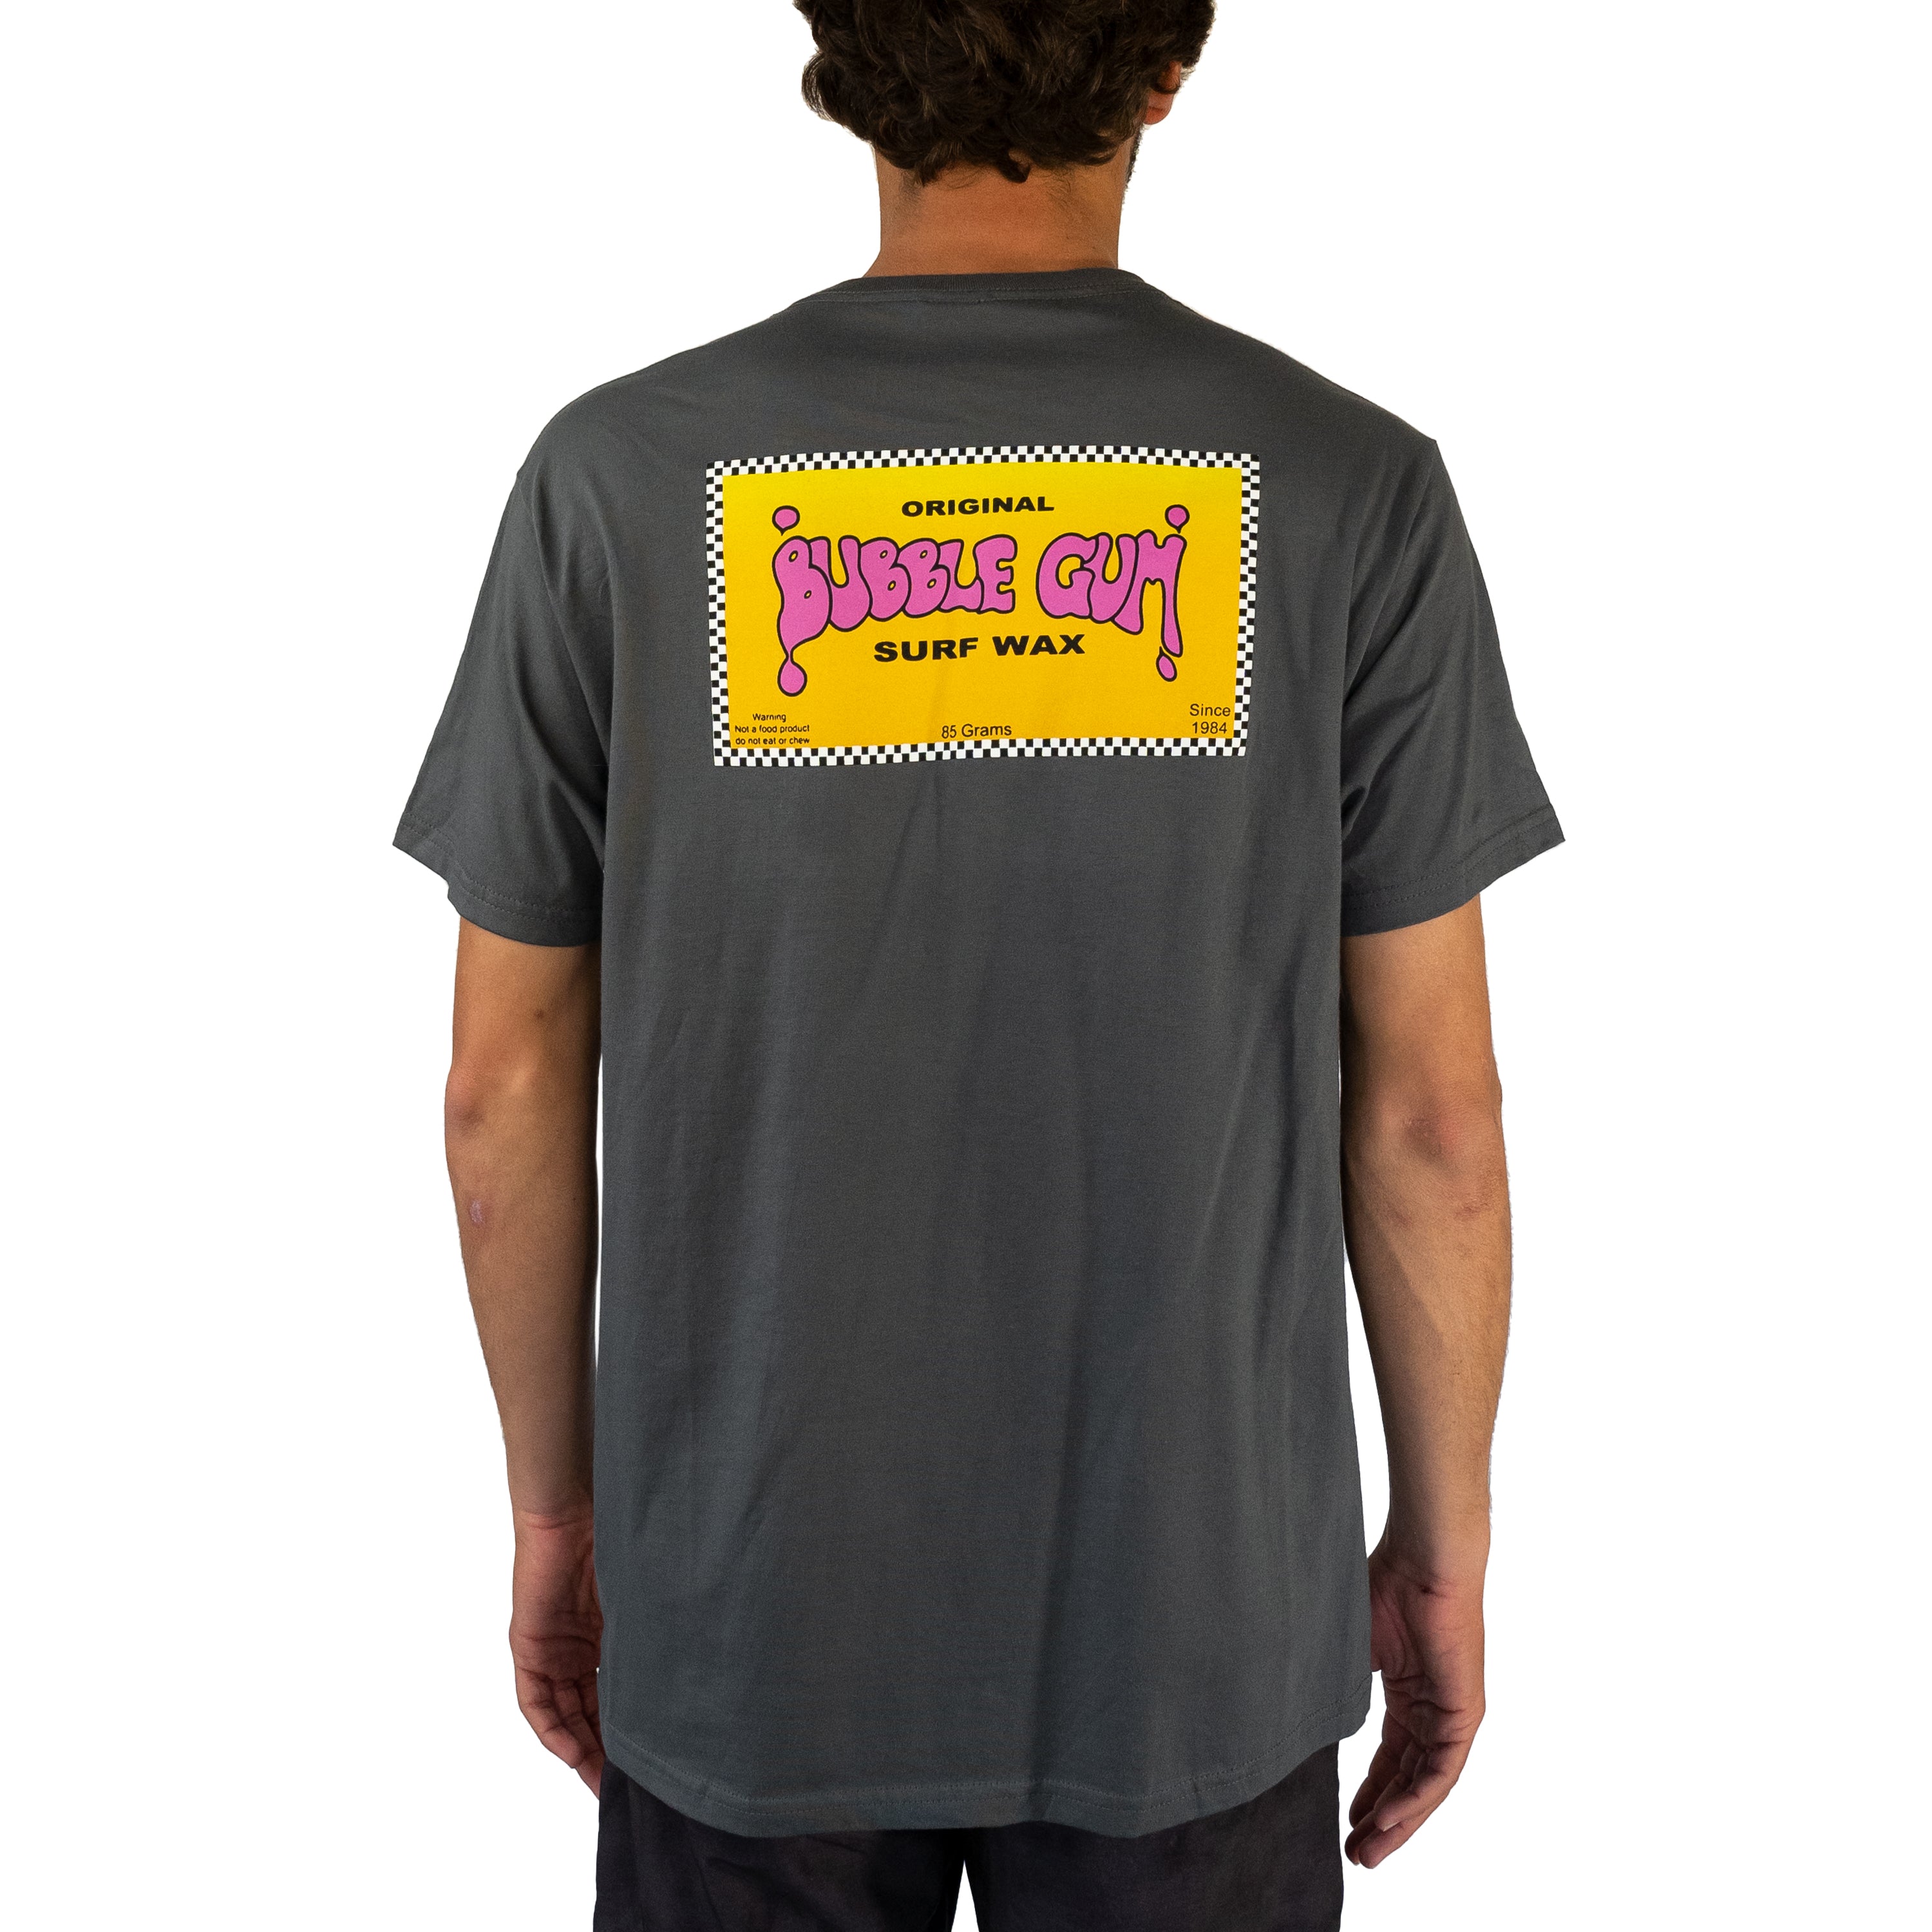 Retro Checkered T-Shirt – Bubble Gum Surf Wax